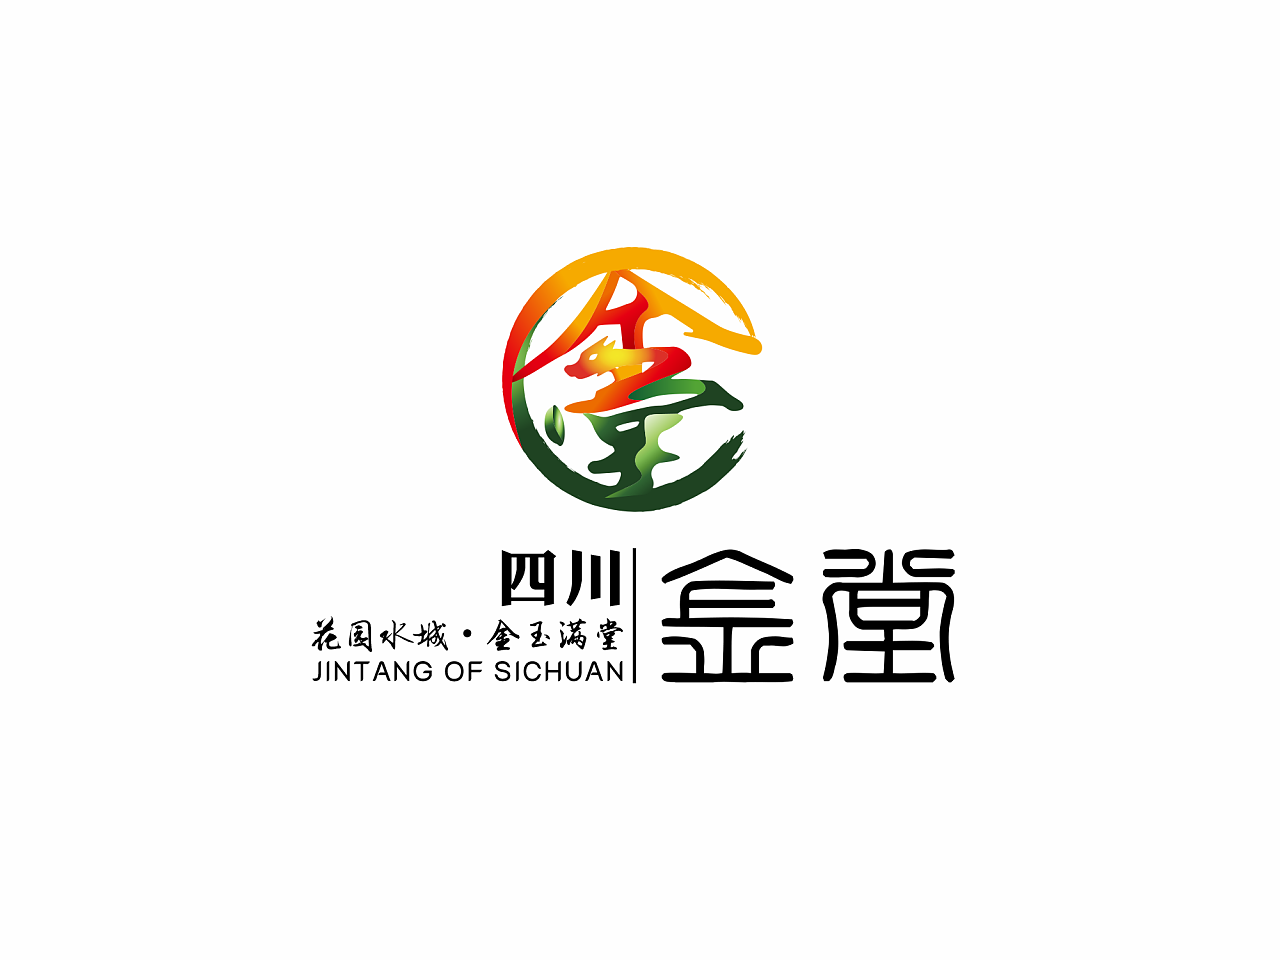 四川金堂县城市logo[原创保护]